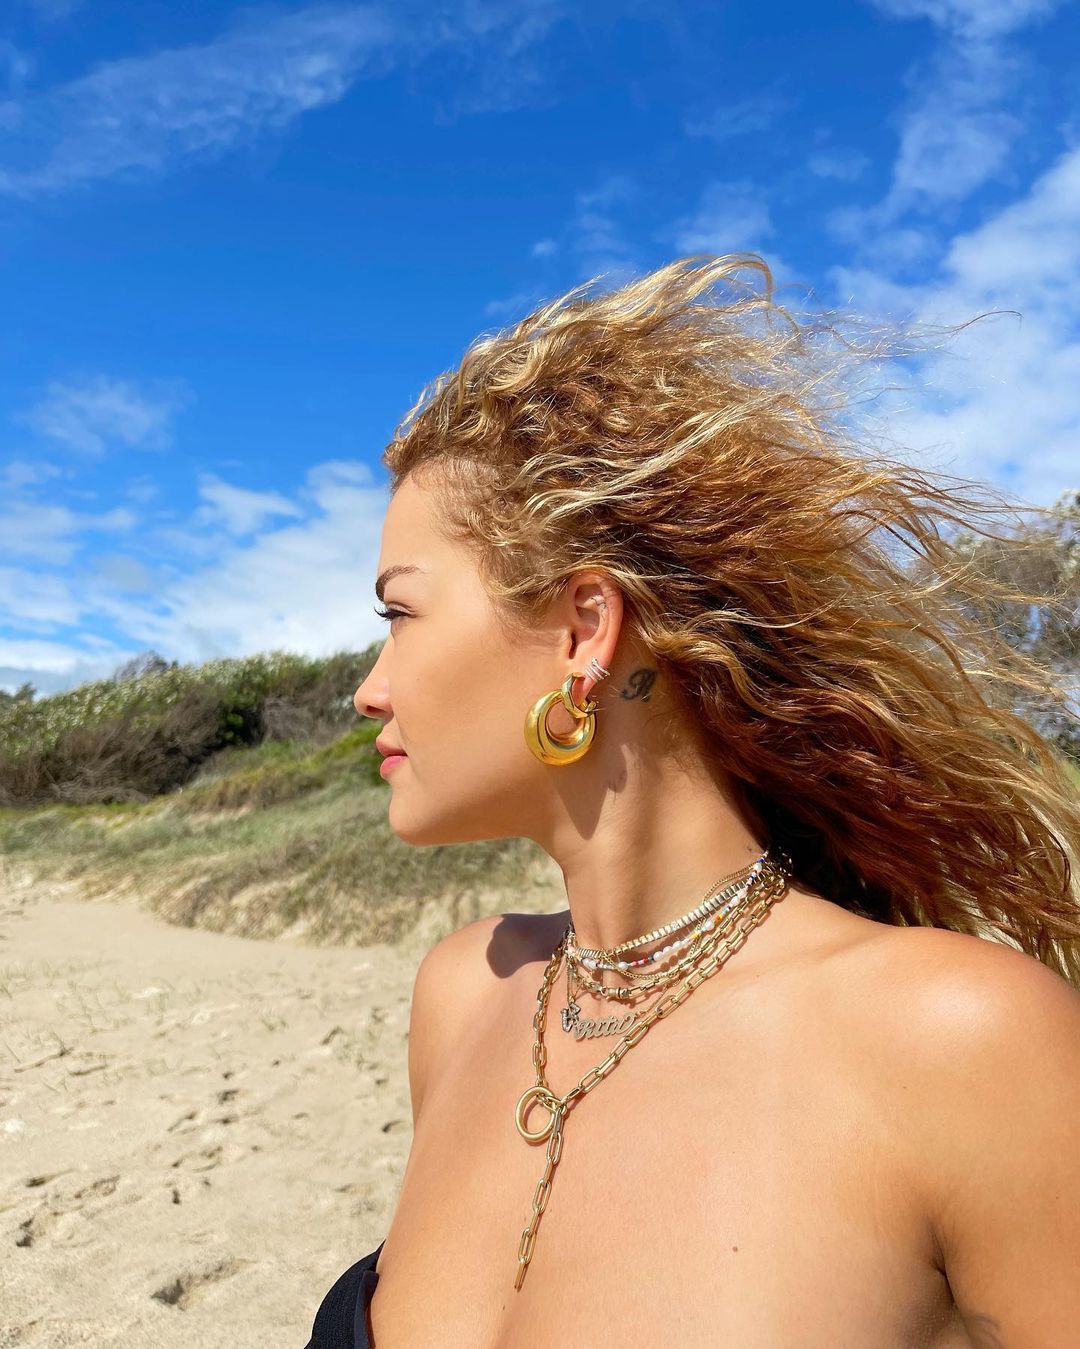 Rita Ora Found a Black Beach! - Photo 35